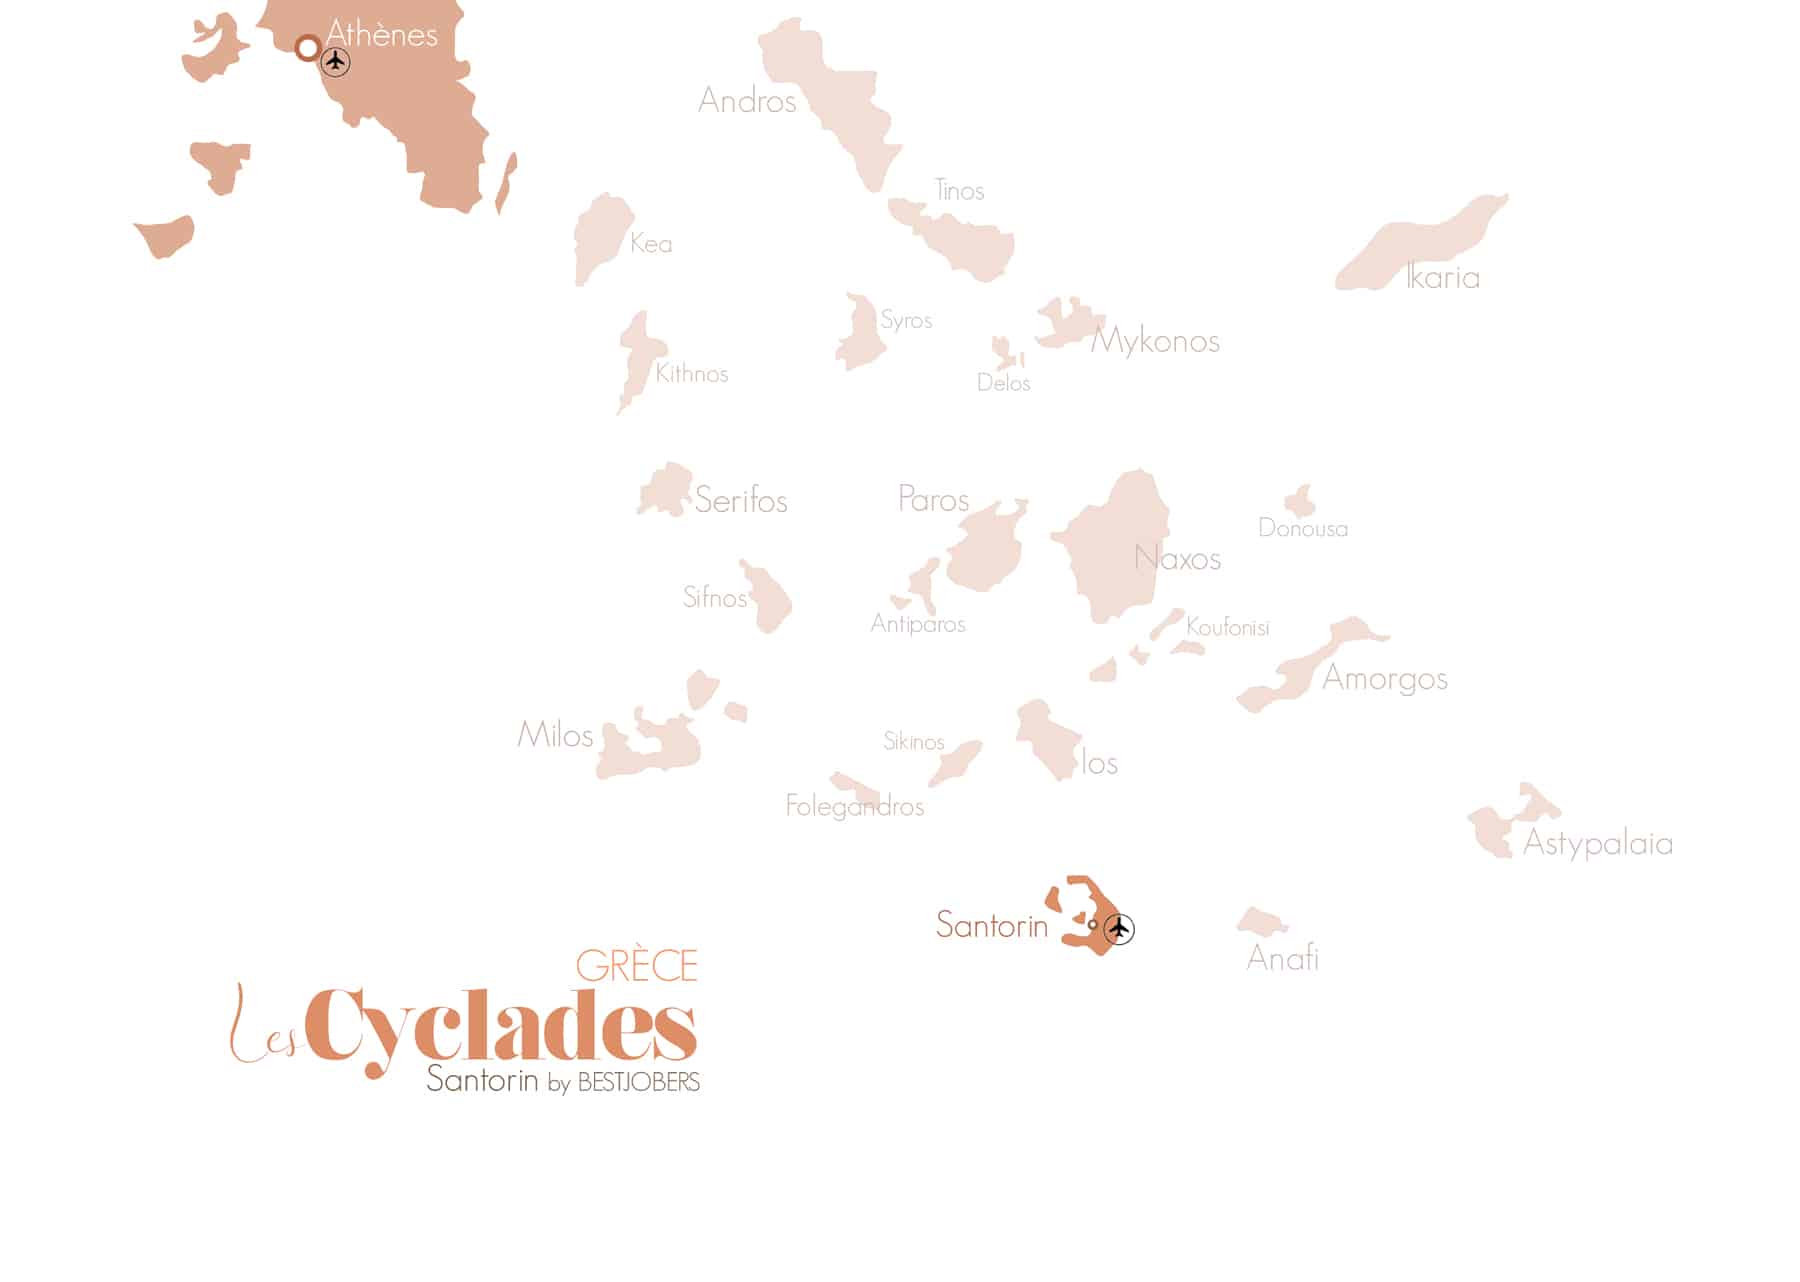 Carte Cyclades Blog Voyage